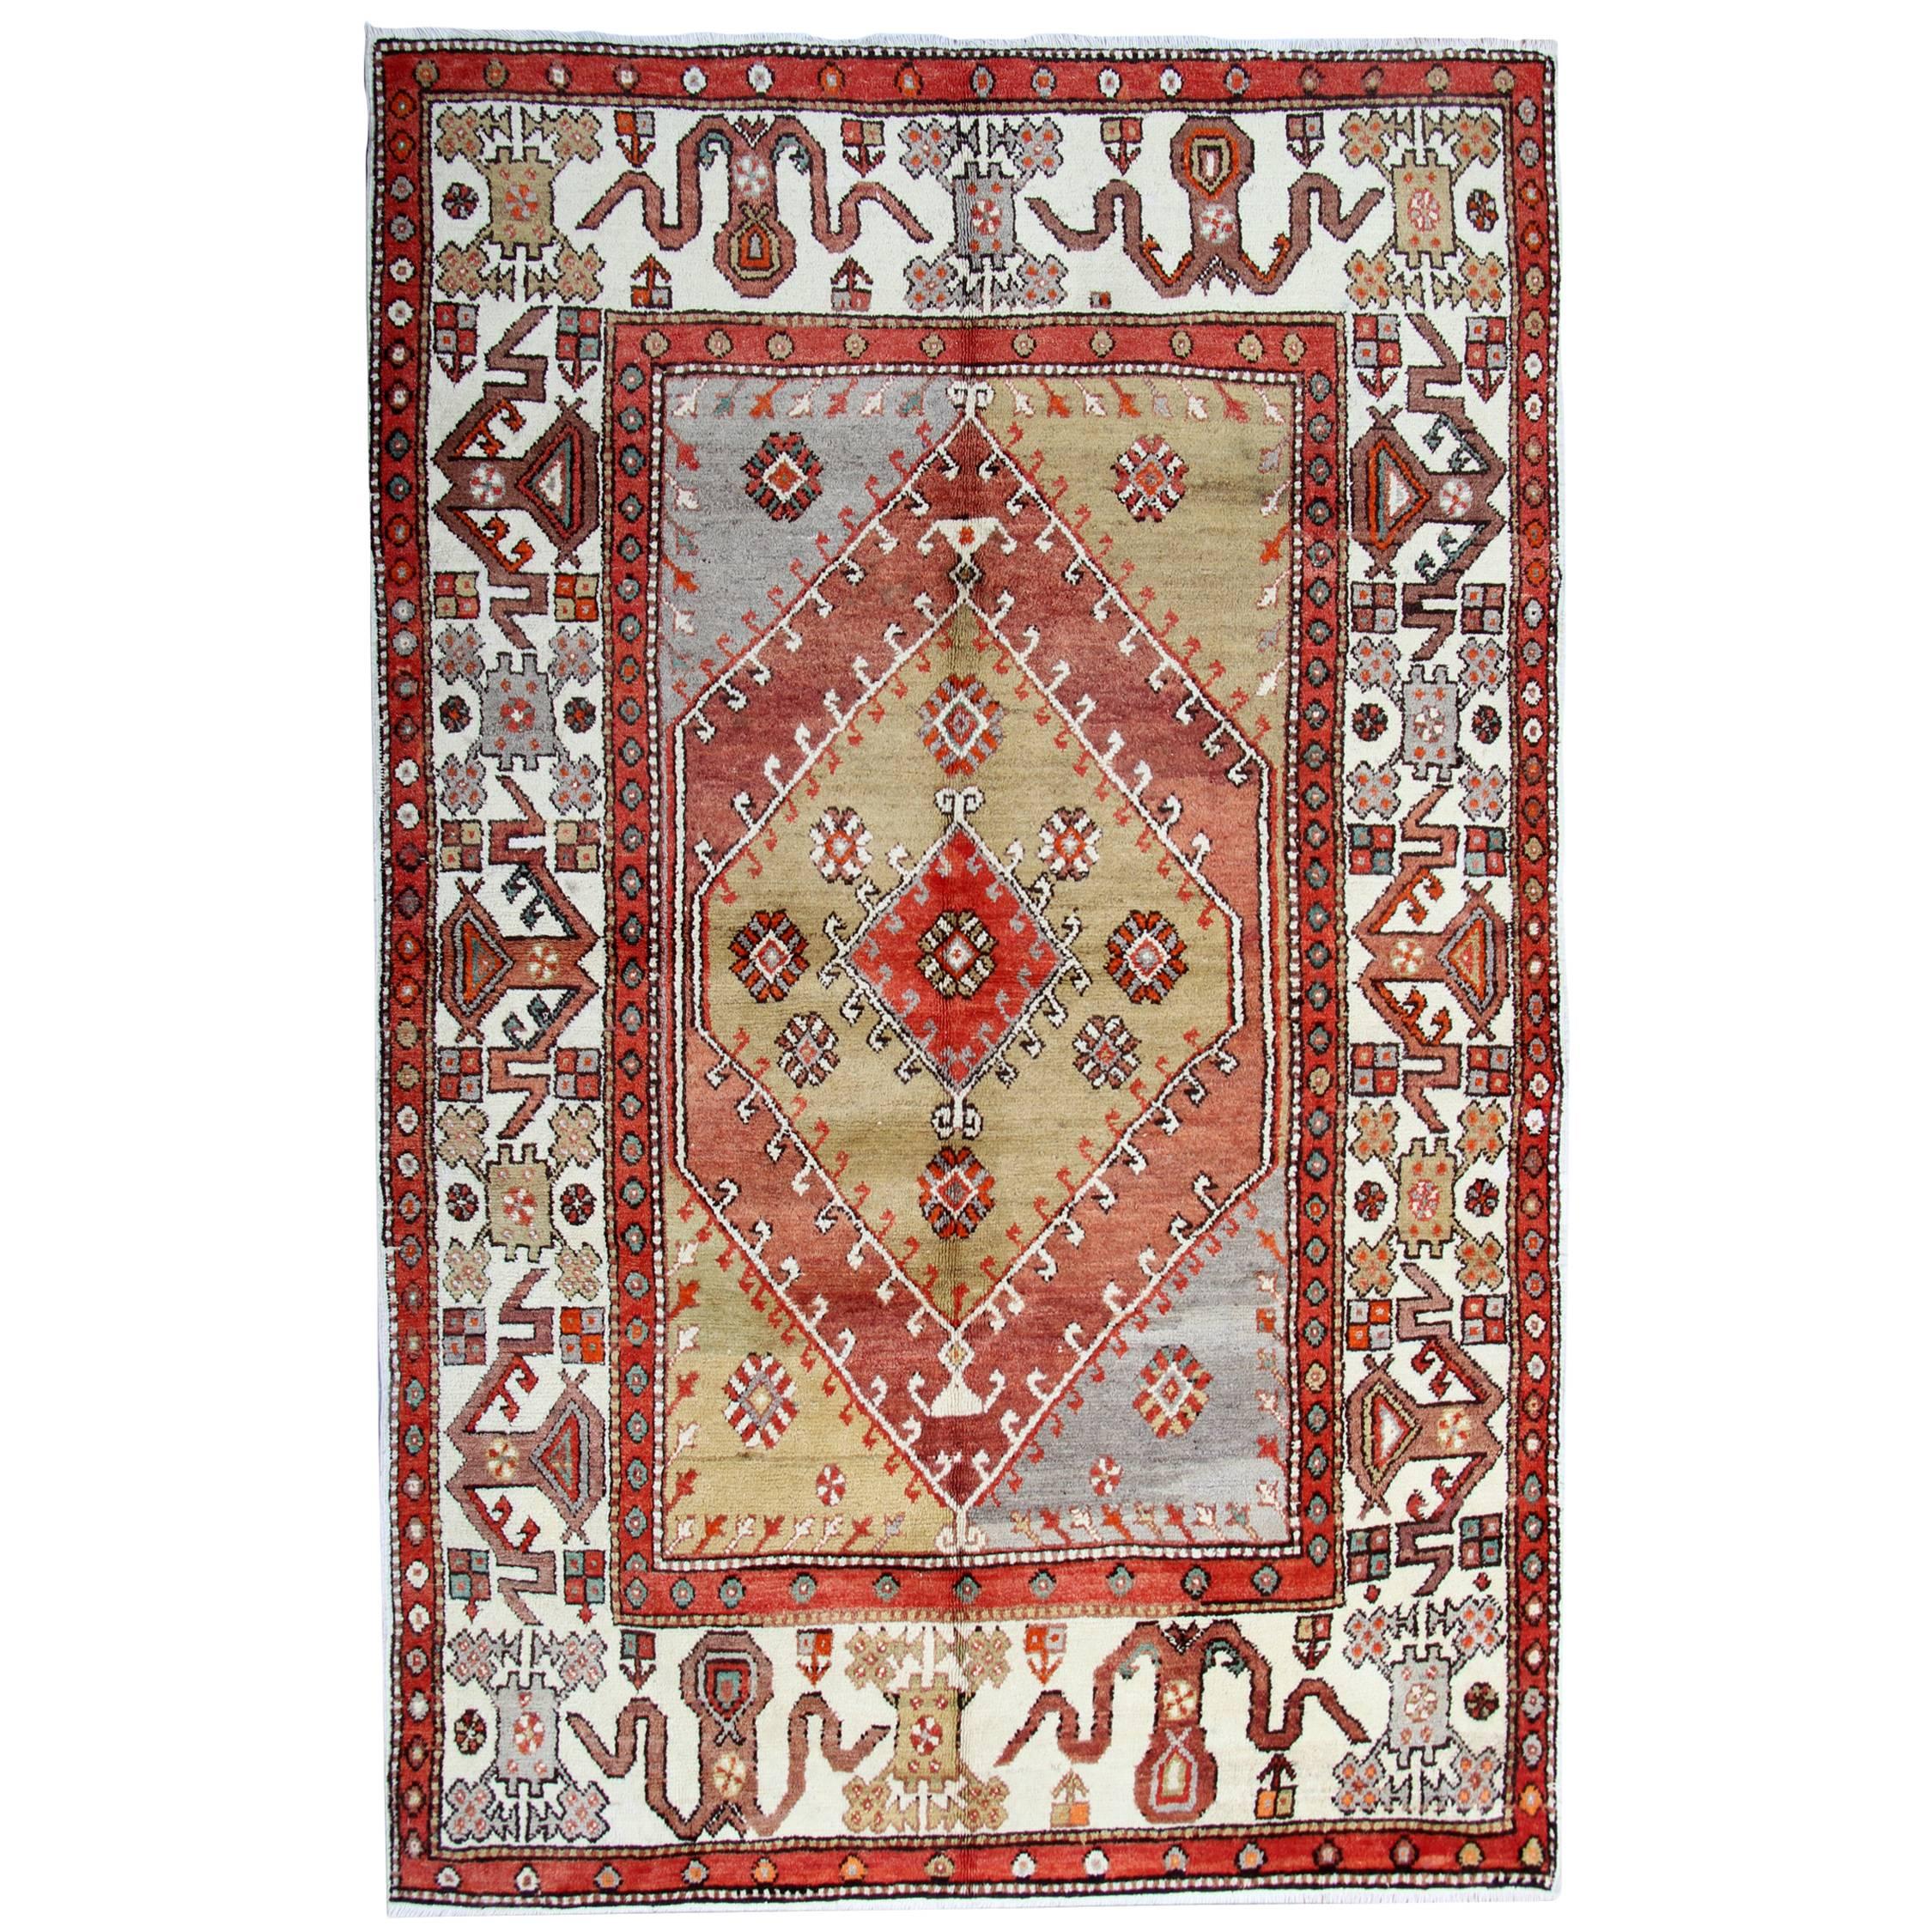 Handgefertigter Teppich Antiker Teppich, Türkischer Teppich, Orientteppich aus Wolle, Strickteppich